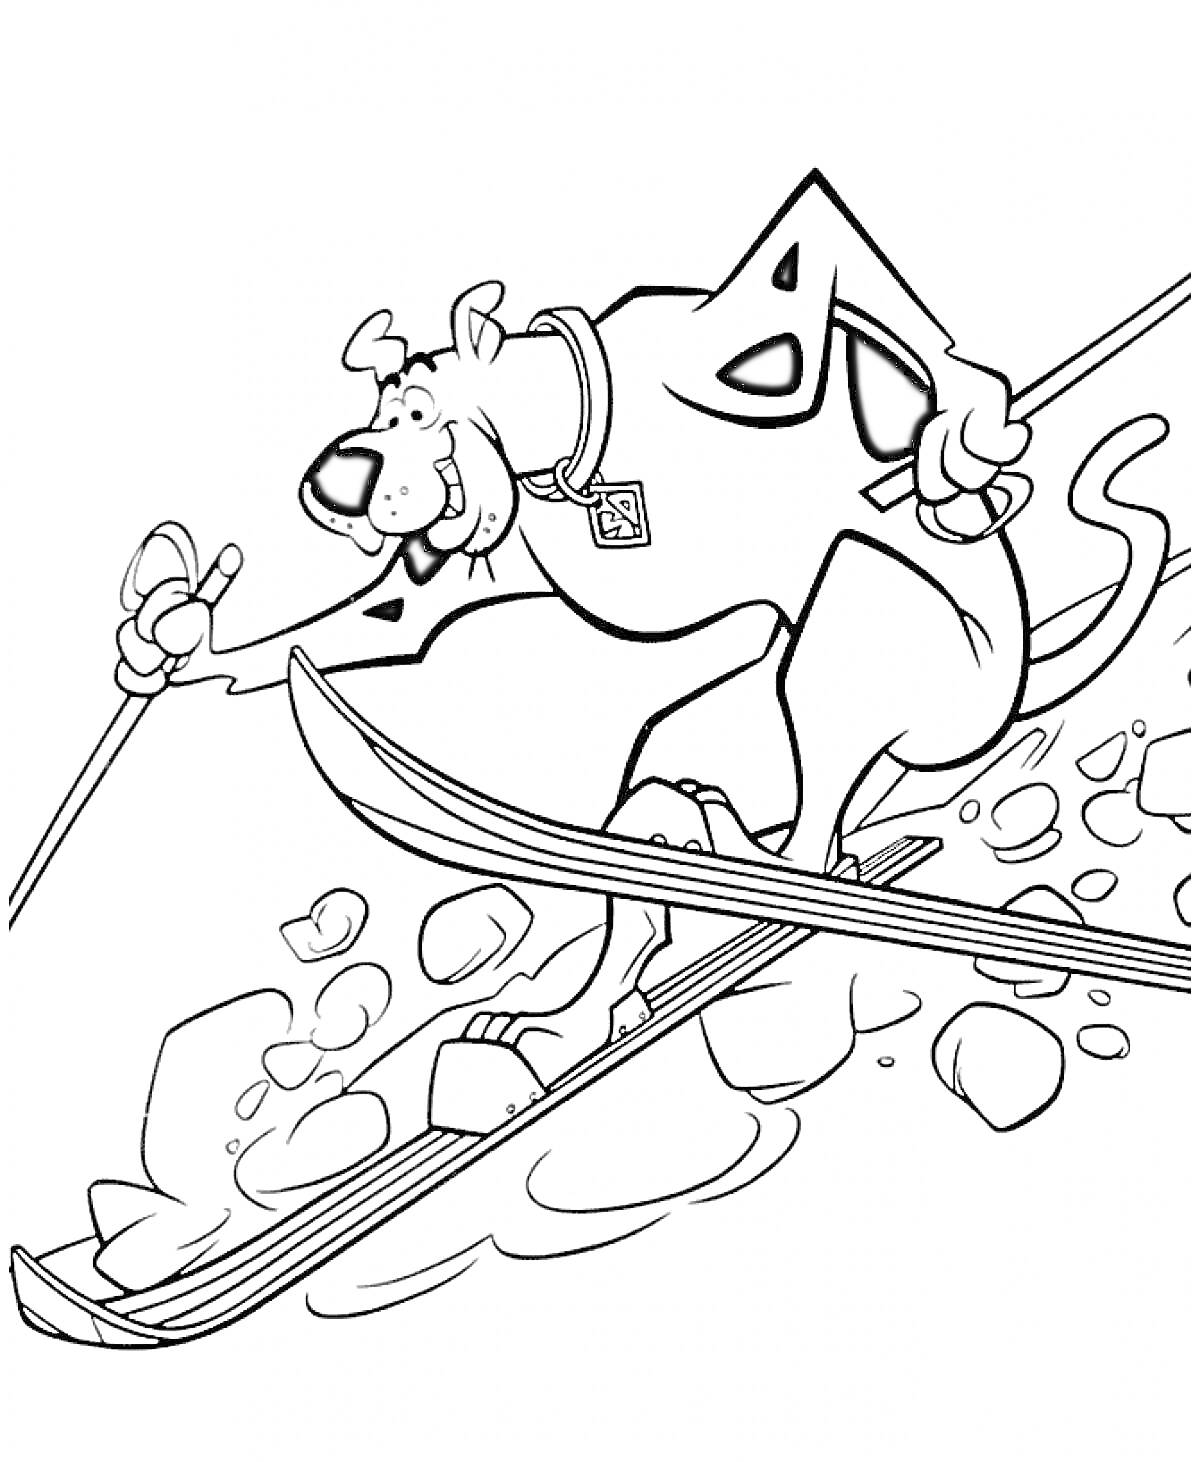 Скуби Ду катается на лыжах и объезжает камни со специальным лыжным костюмом